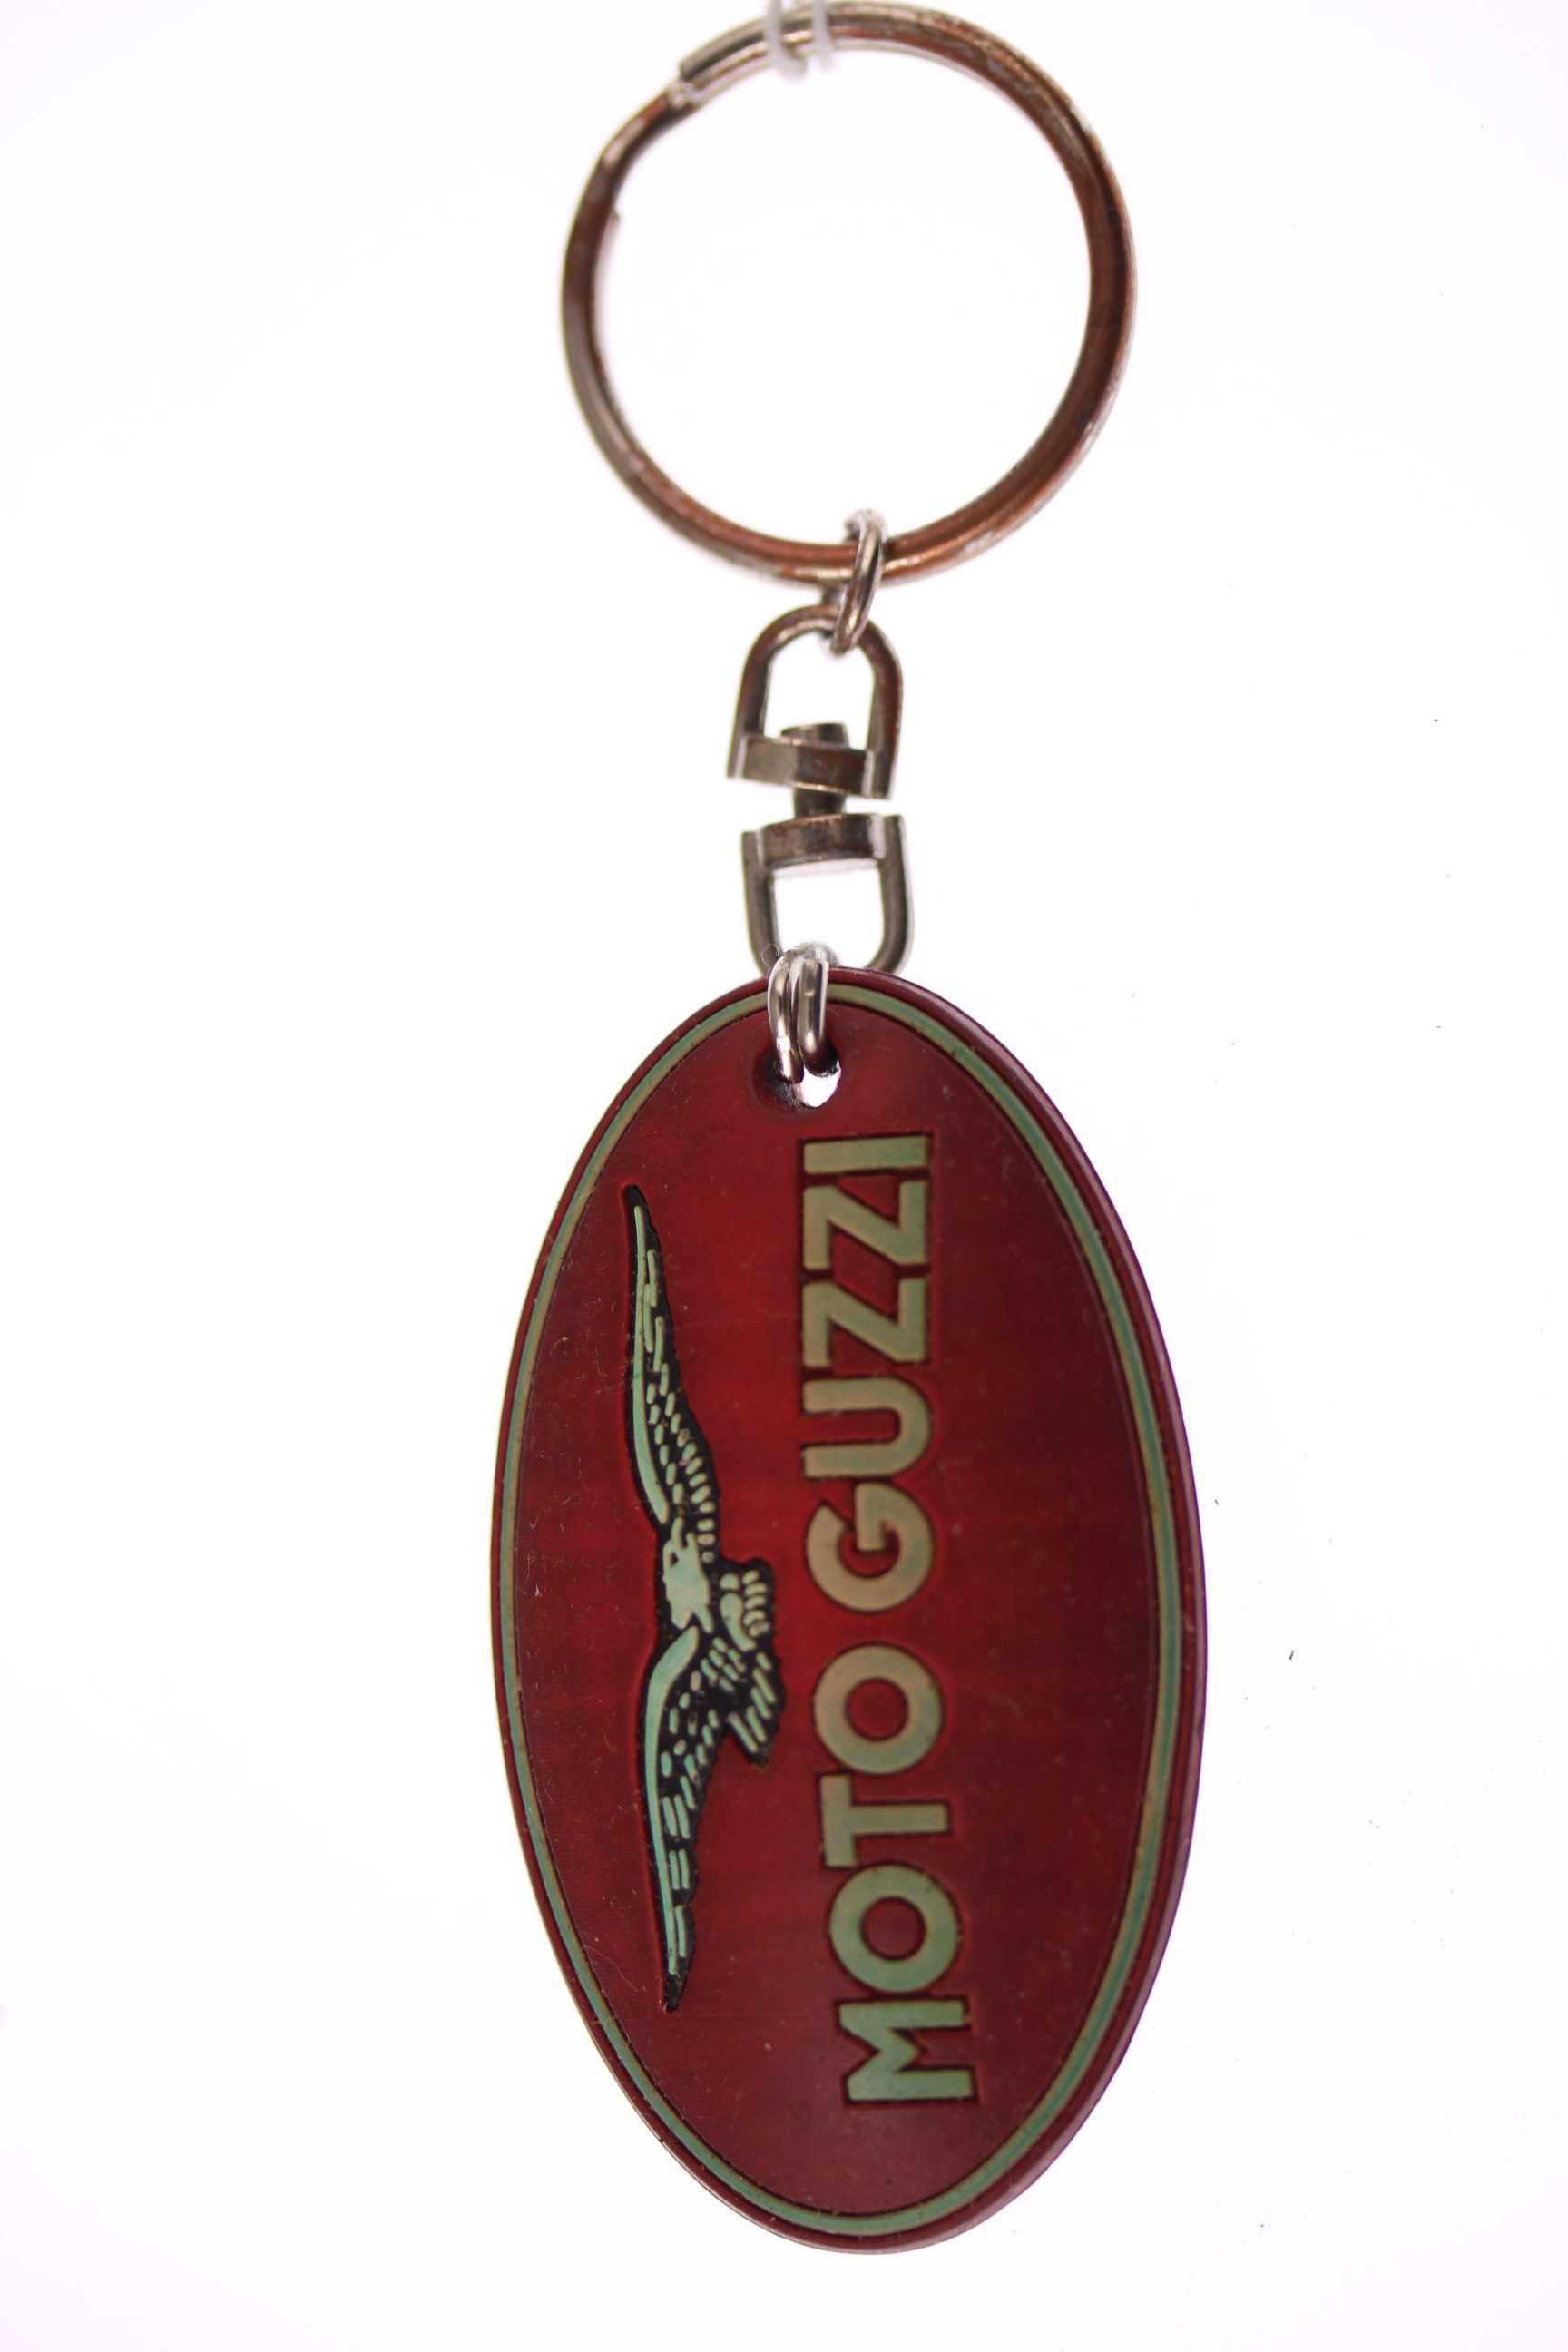 Moto Guzzi  Key Ring 